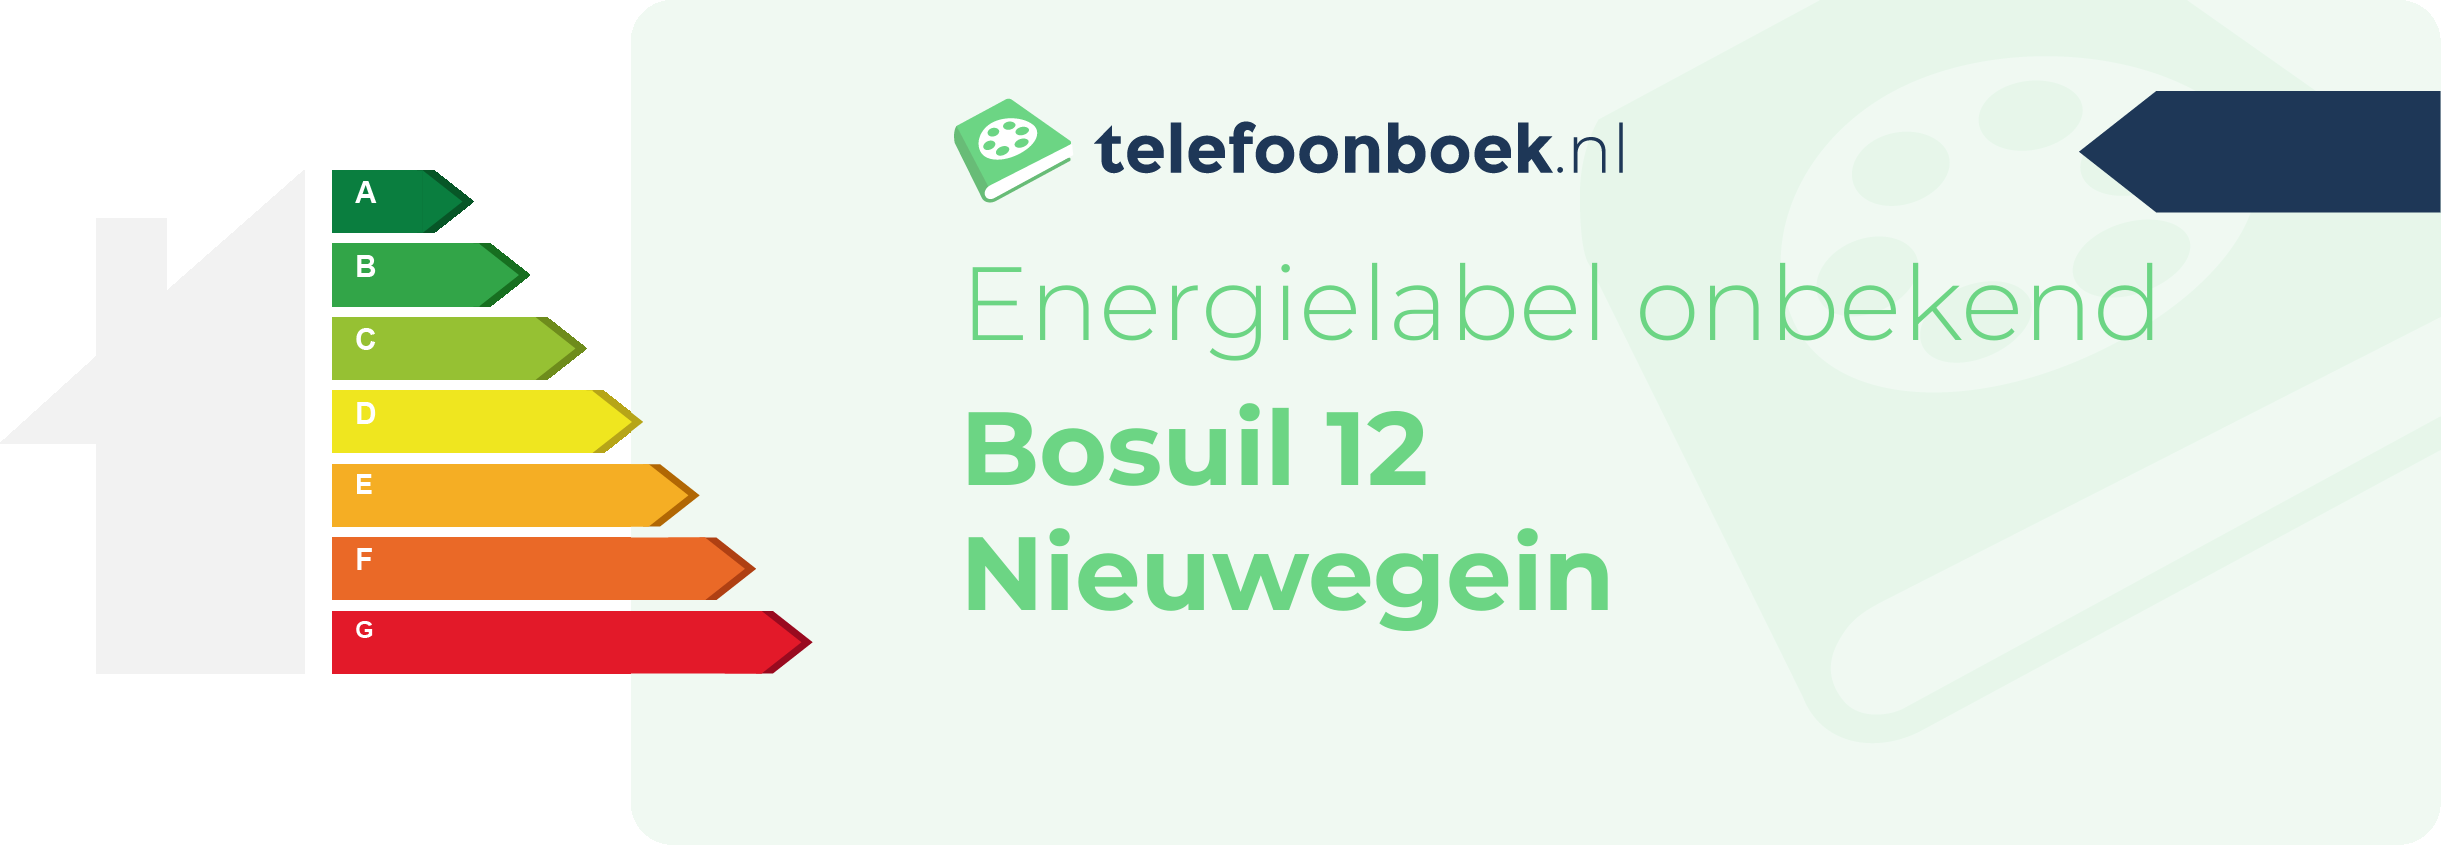 Energielabel Bosuil 12 Nieuwegein